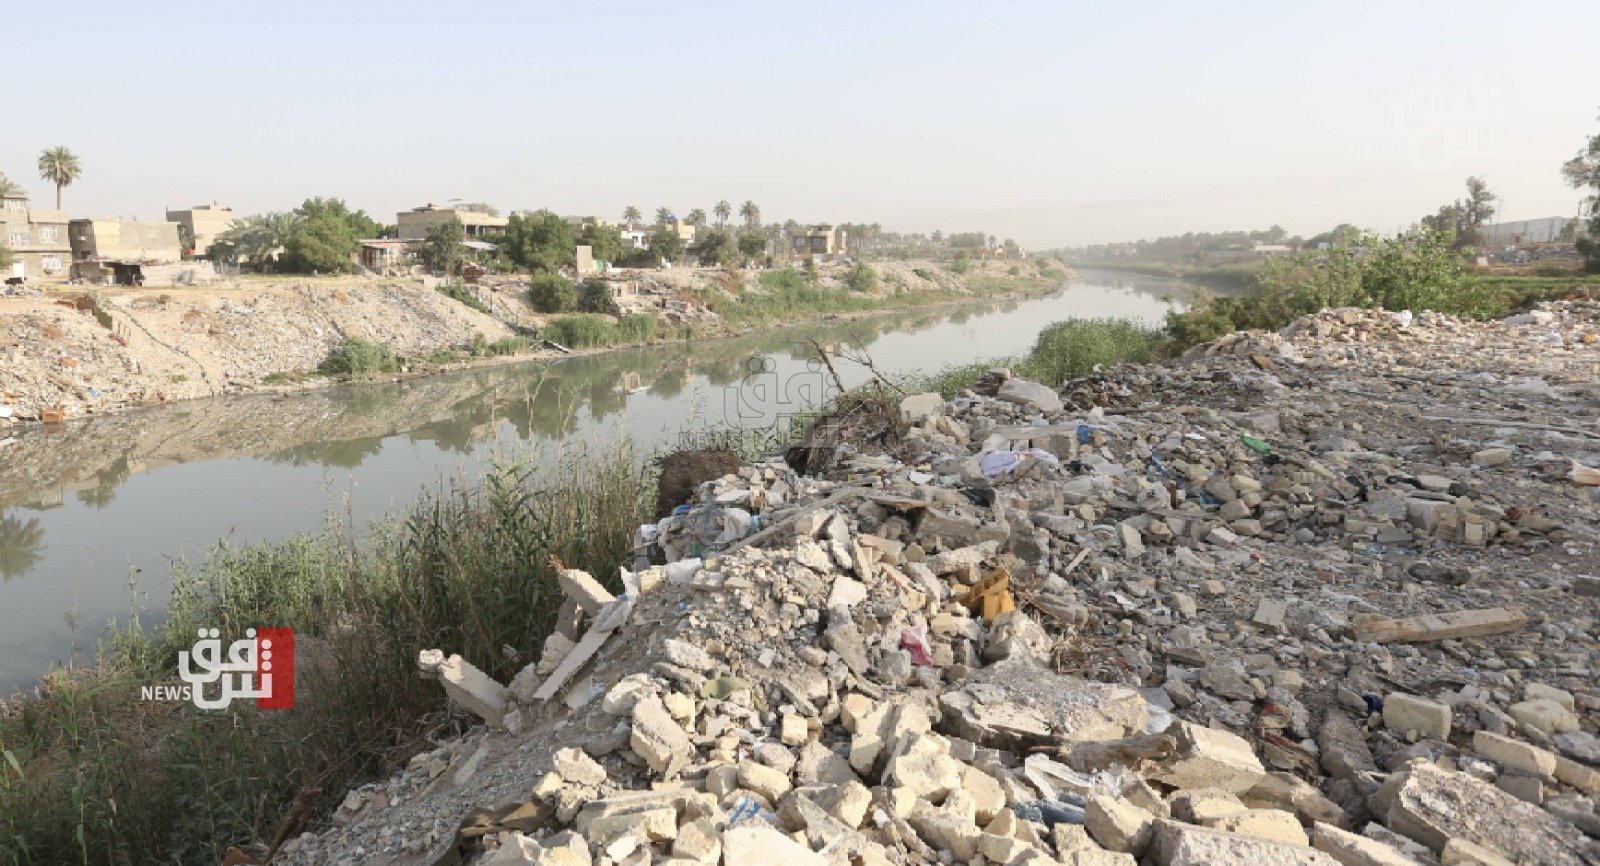 تلوّث المياه والتغيّر المناخي يهدّدان الصحة العامة في العراق